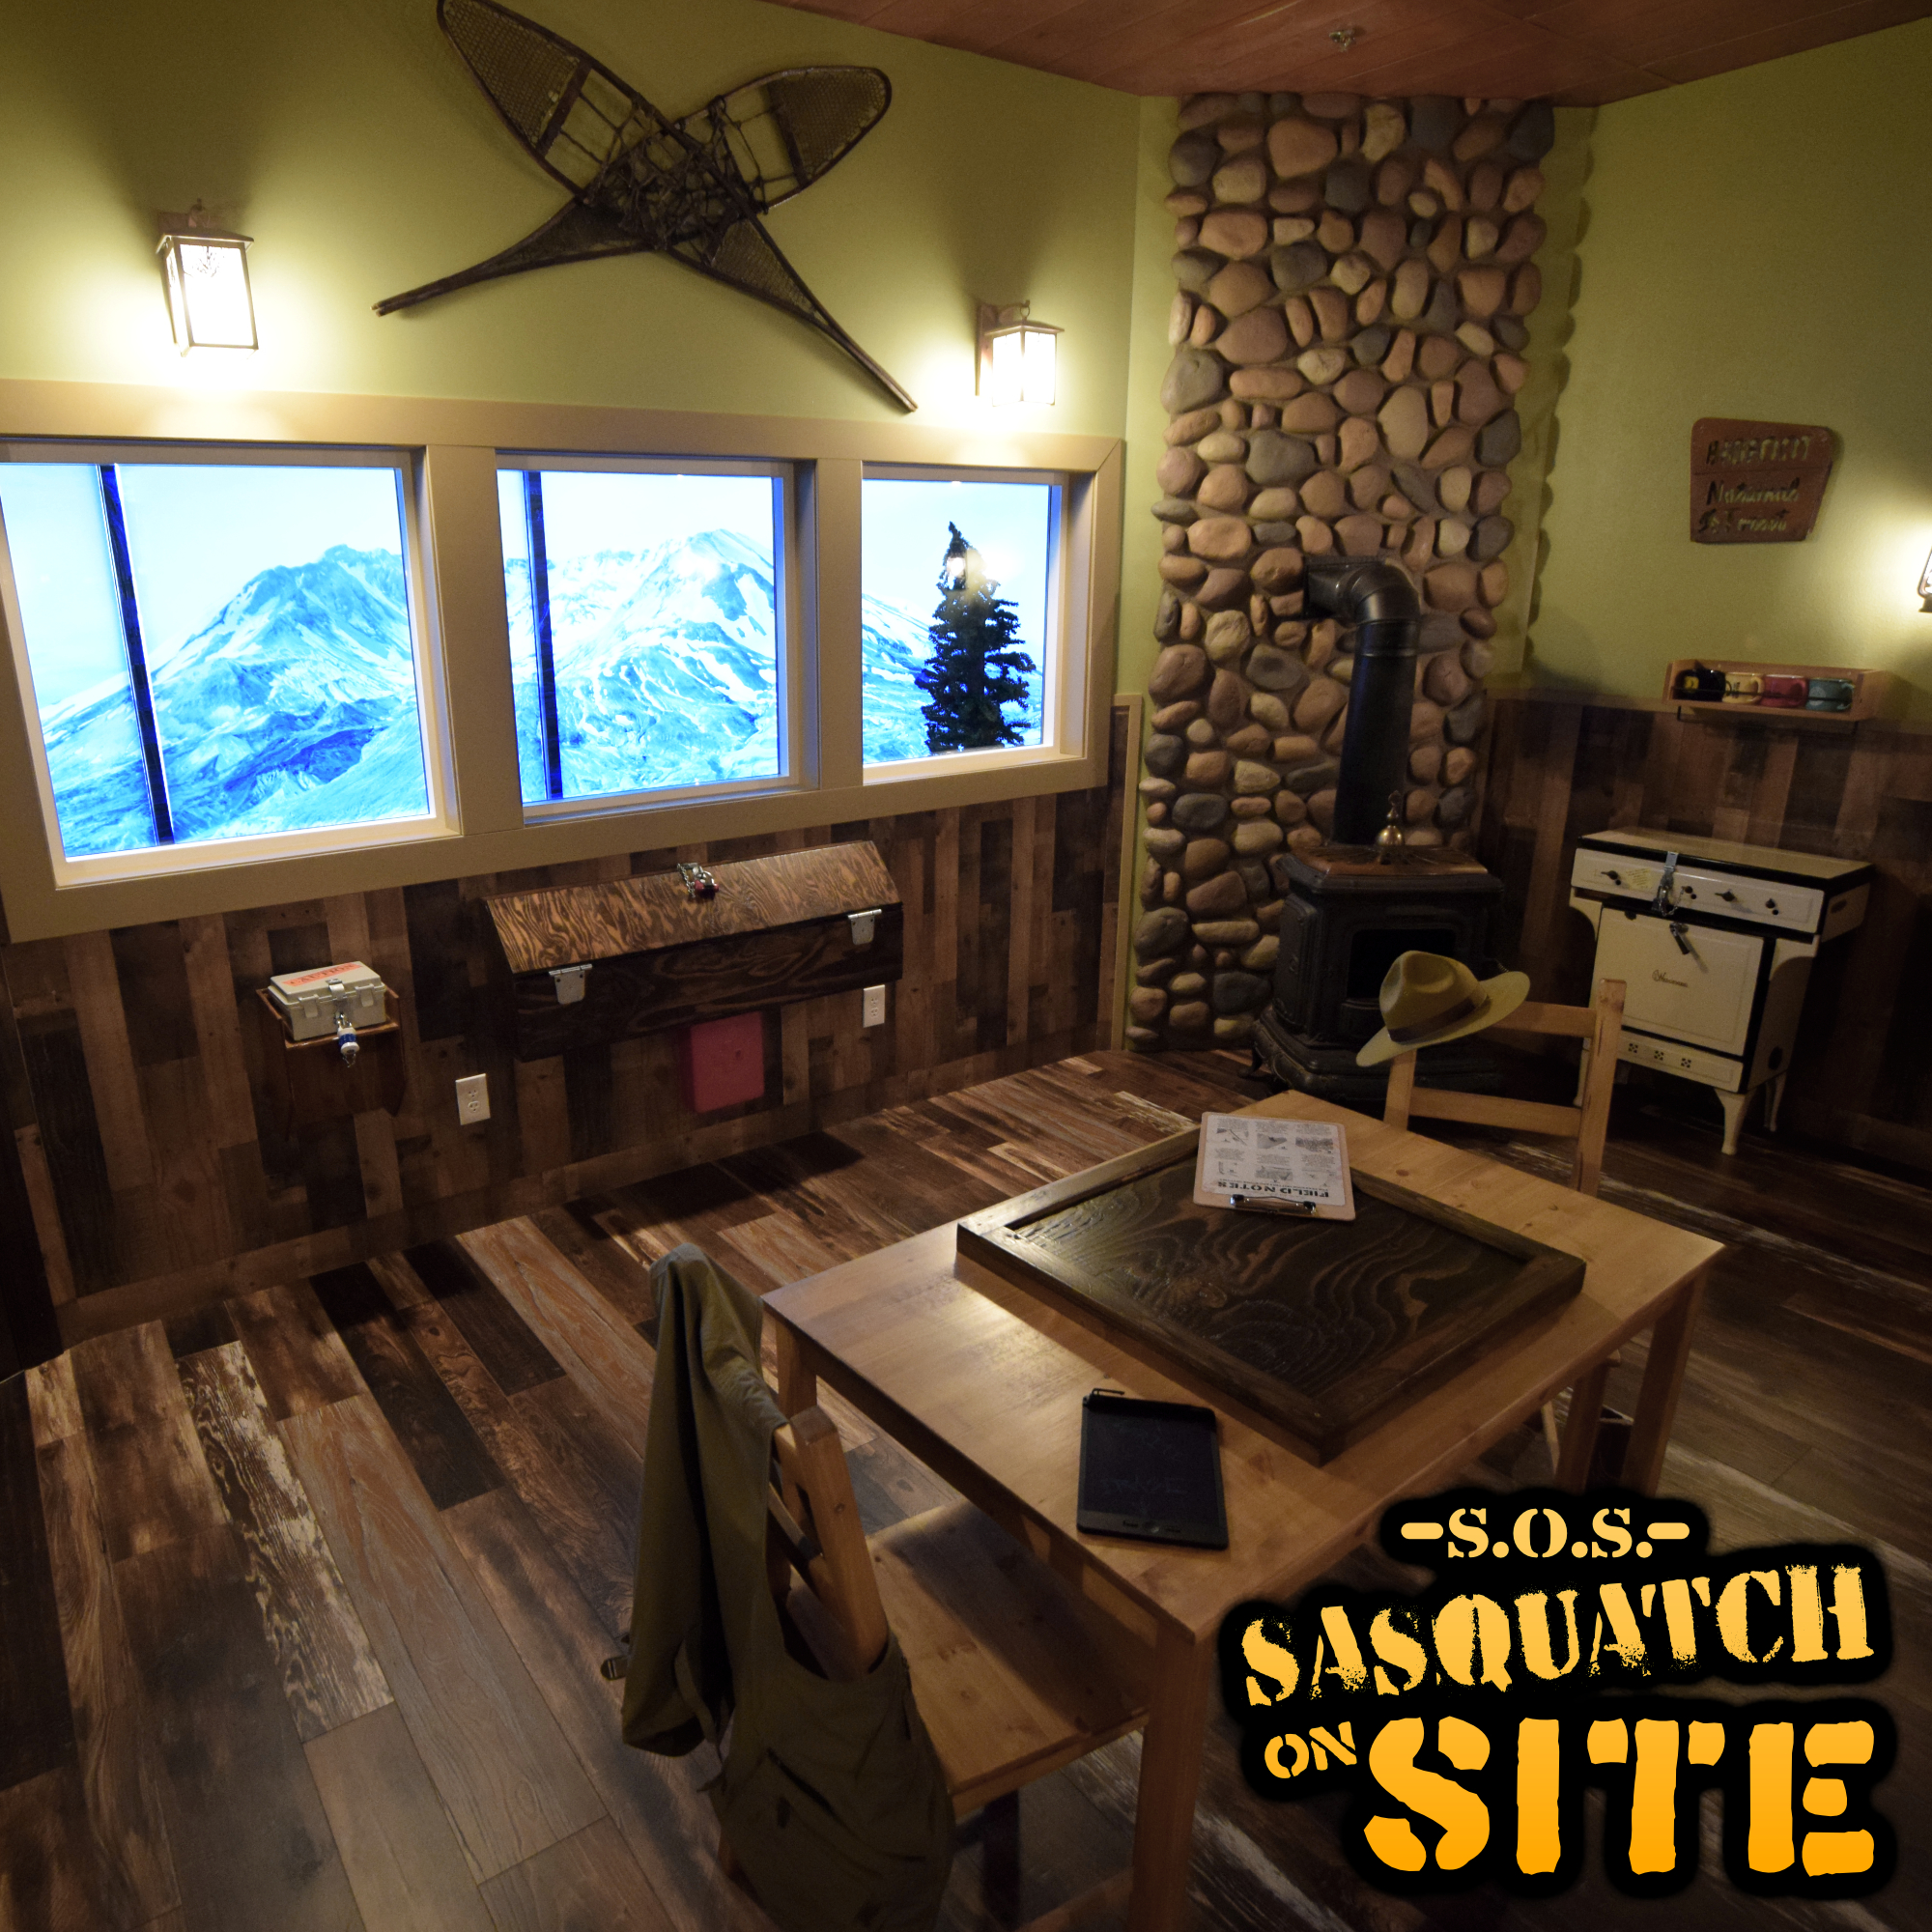 snapshot of Sasquatch escape room